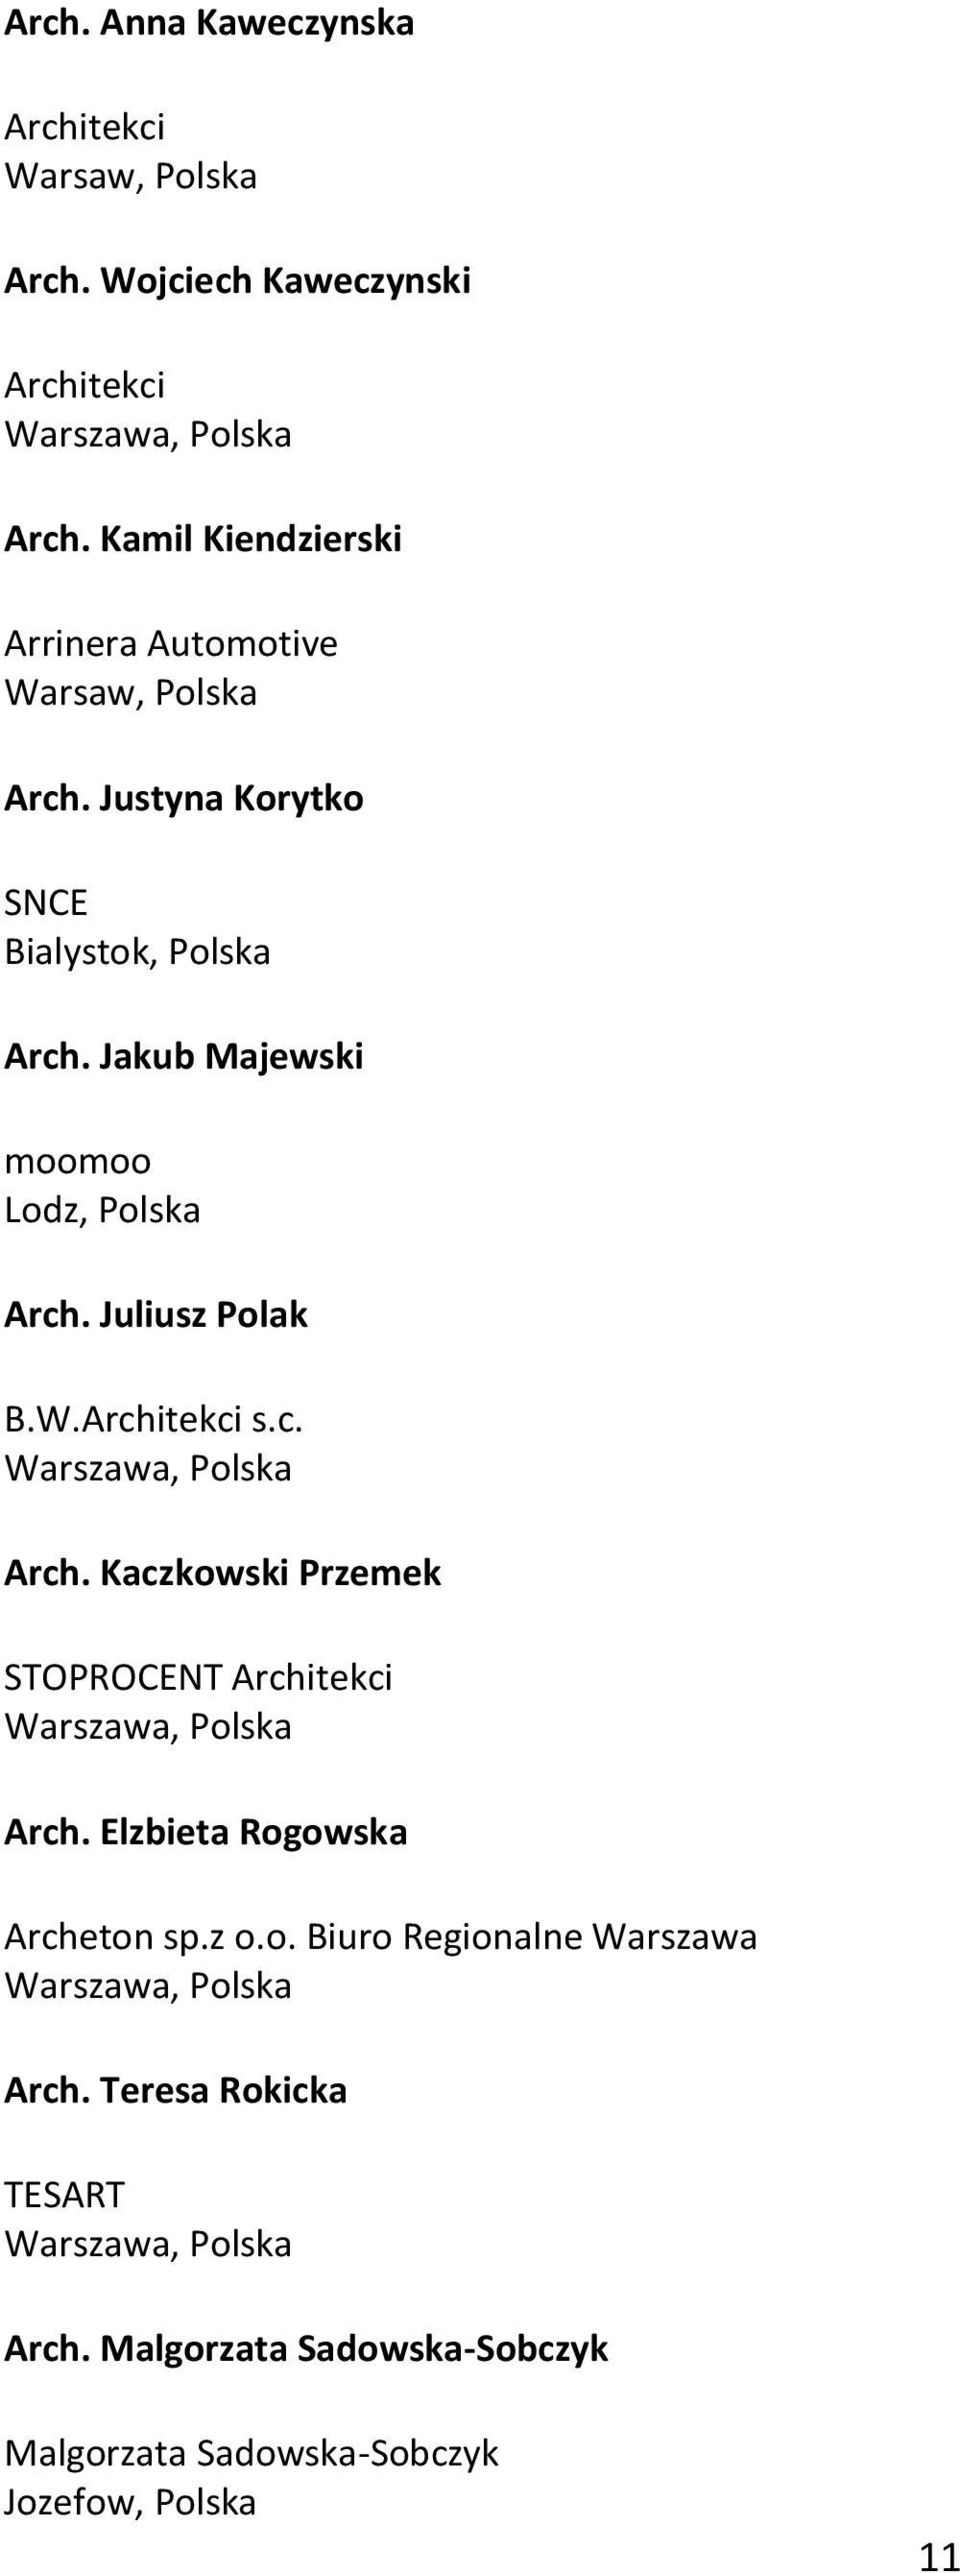 Jakub Majewski moomoo Lodz, Polska Arch. Juliusz Polak B.W.Architekci s.c. Arch. Kaczkowski Przemek STOPROCENT Architekci Arch.